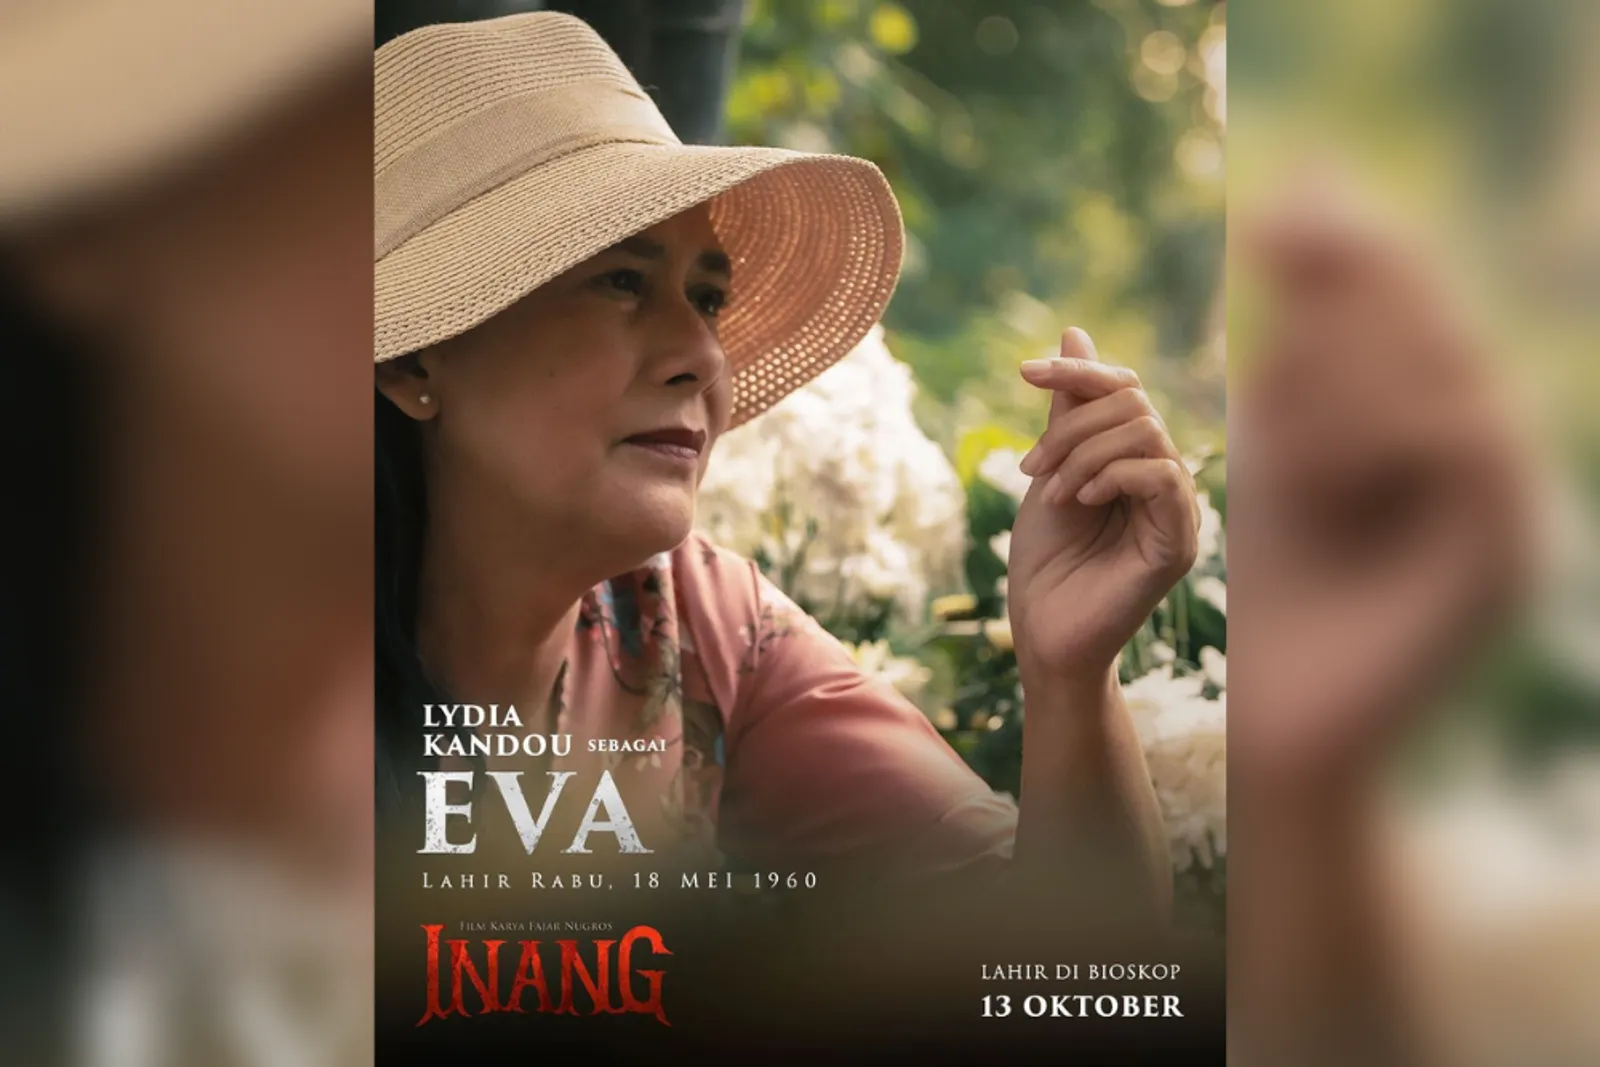 Bermain di Film 'Inang', Lydia Kandou Percaya Akan Hal Mistis